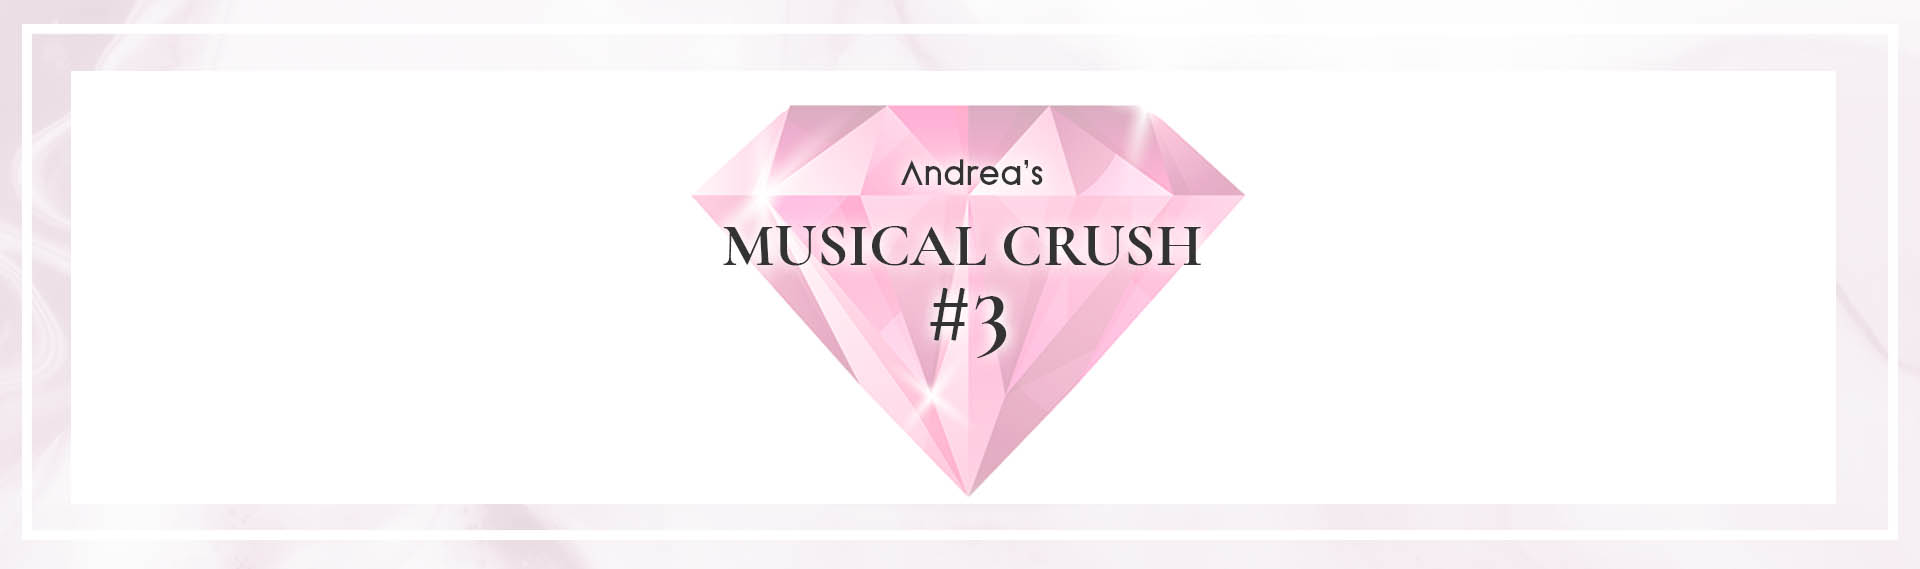 Bannière pour la rubrique musical crush du blog Andrea Lounge